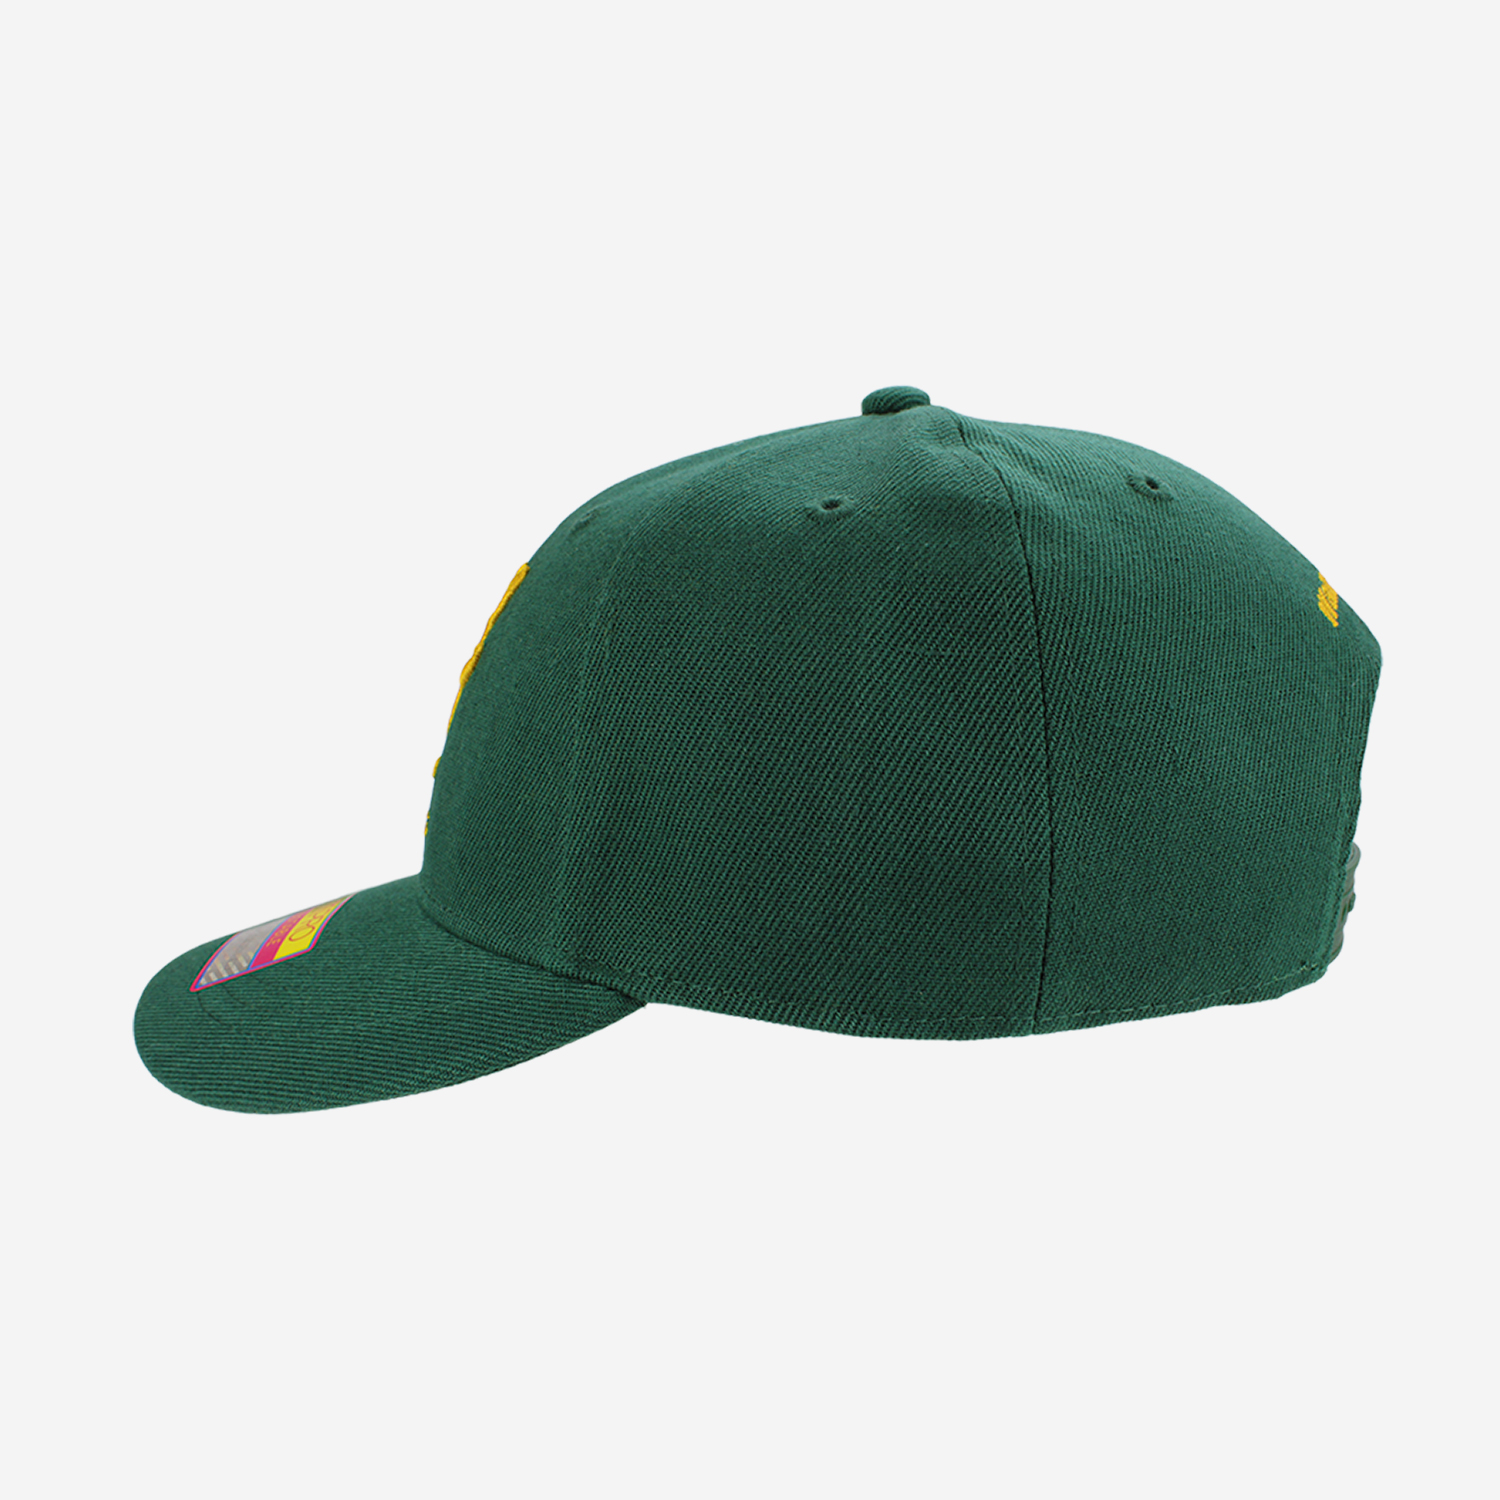 Wallabies Green Adjustable Cap